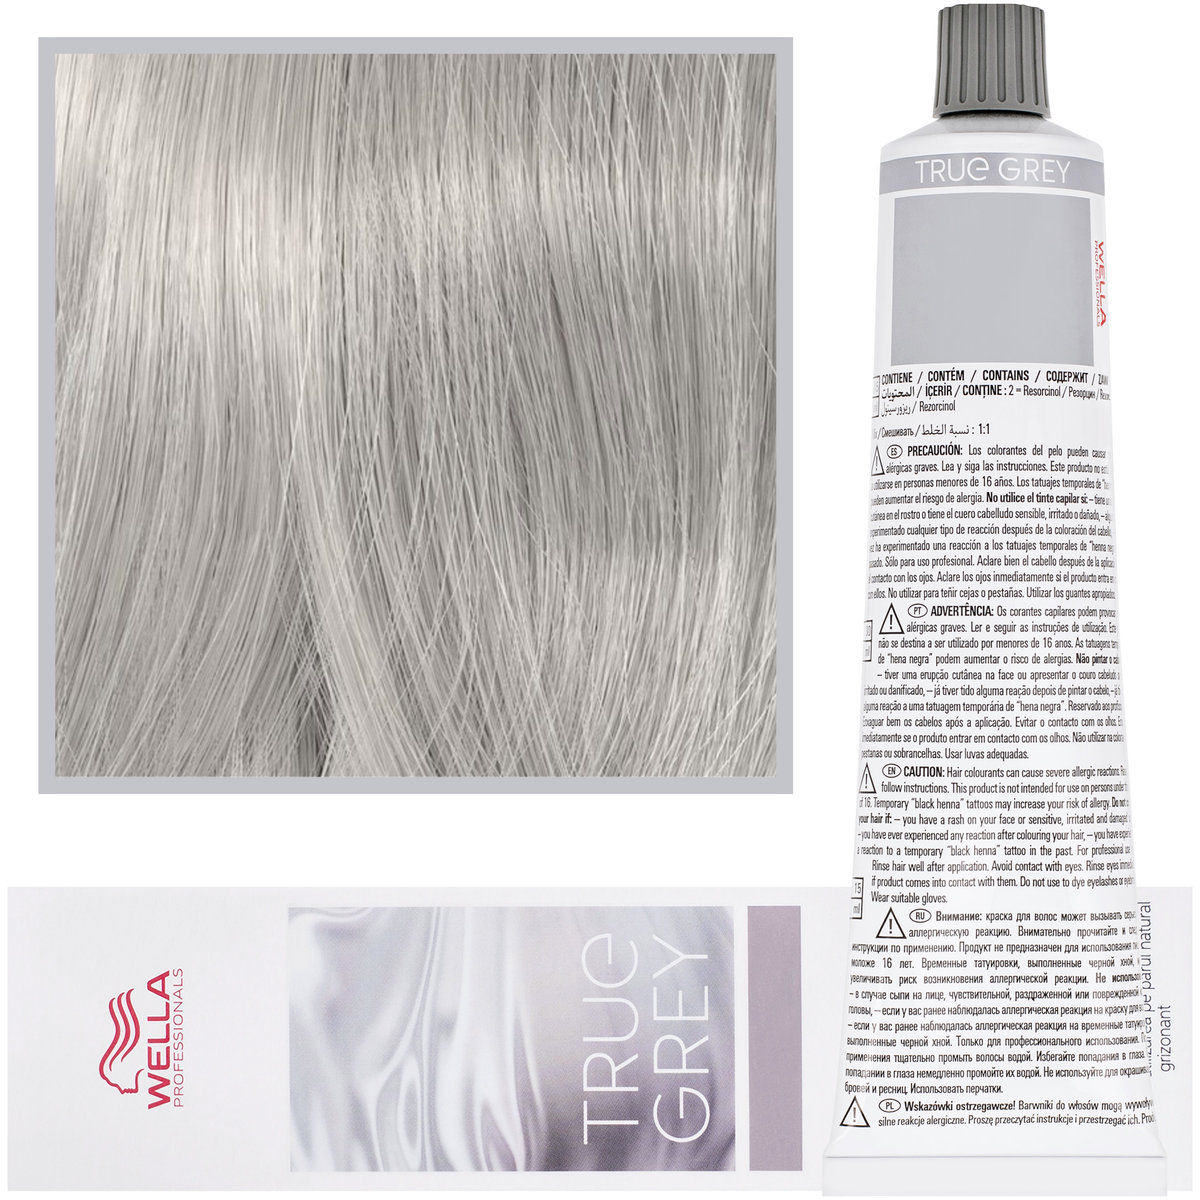 Wella True Grey Shimmer Light Toner Graphite, Błyszczący jasny grafit toner, farba do włosów naturalnie siwych, 60ml